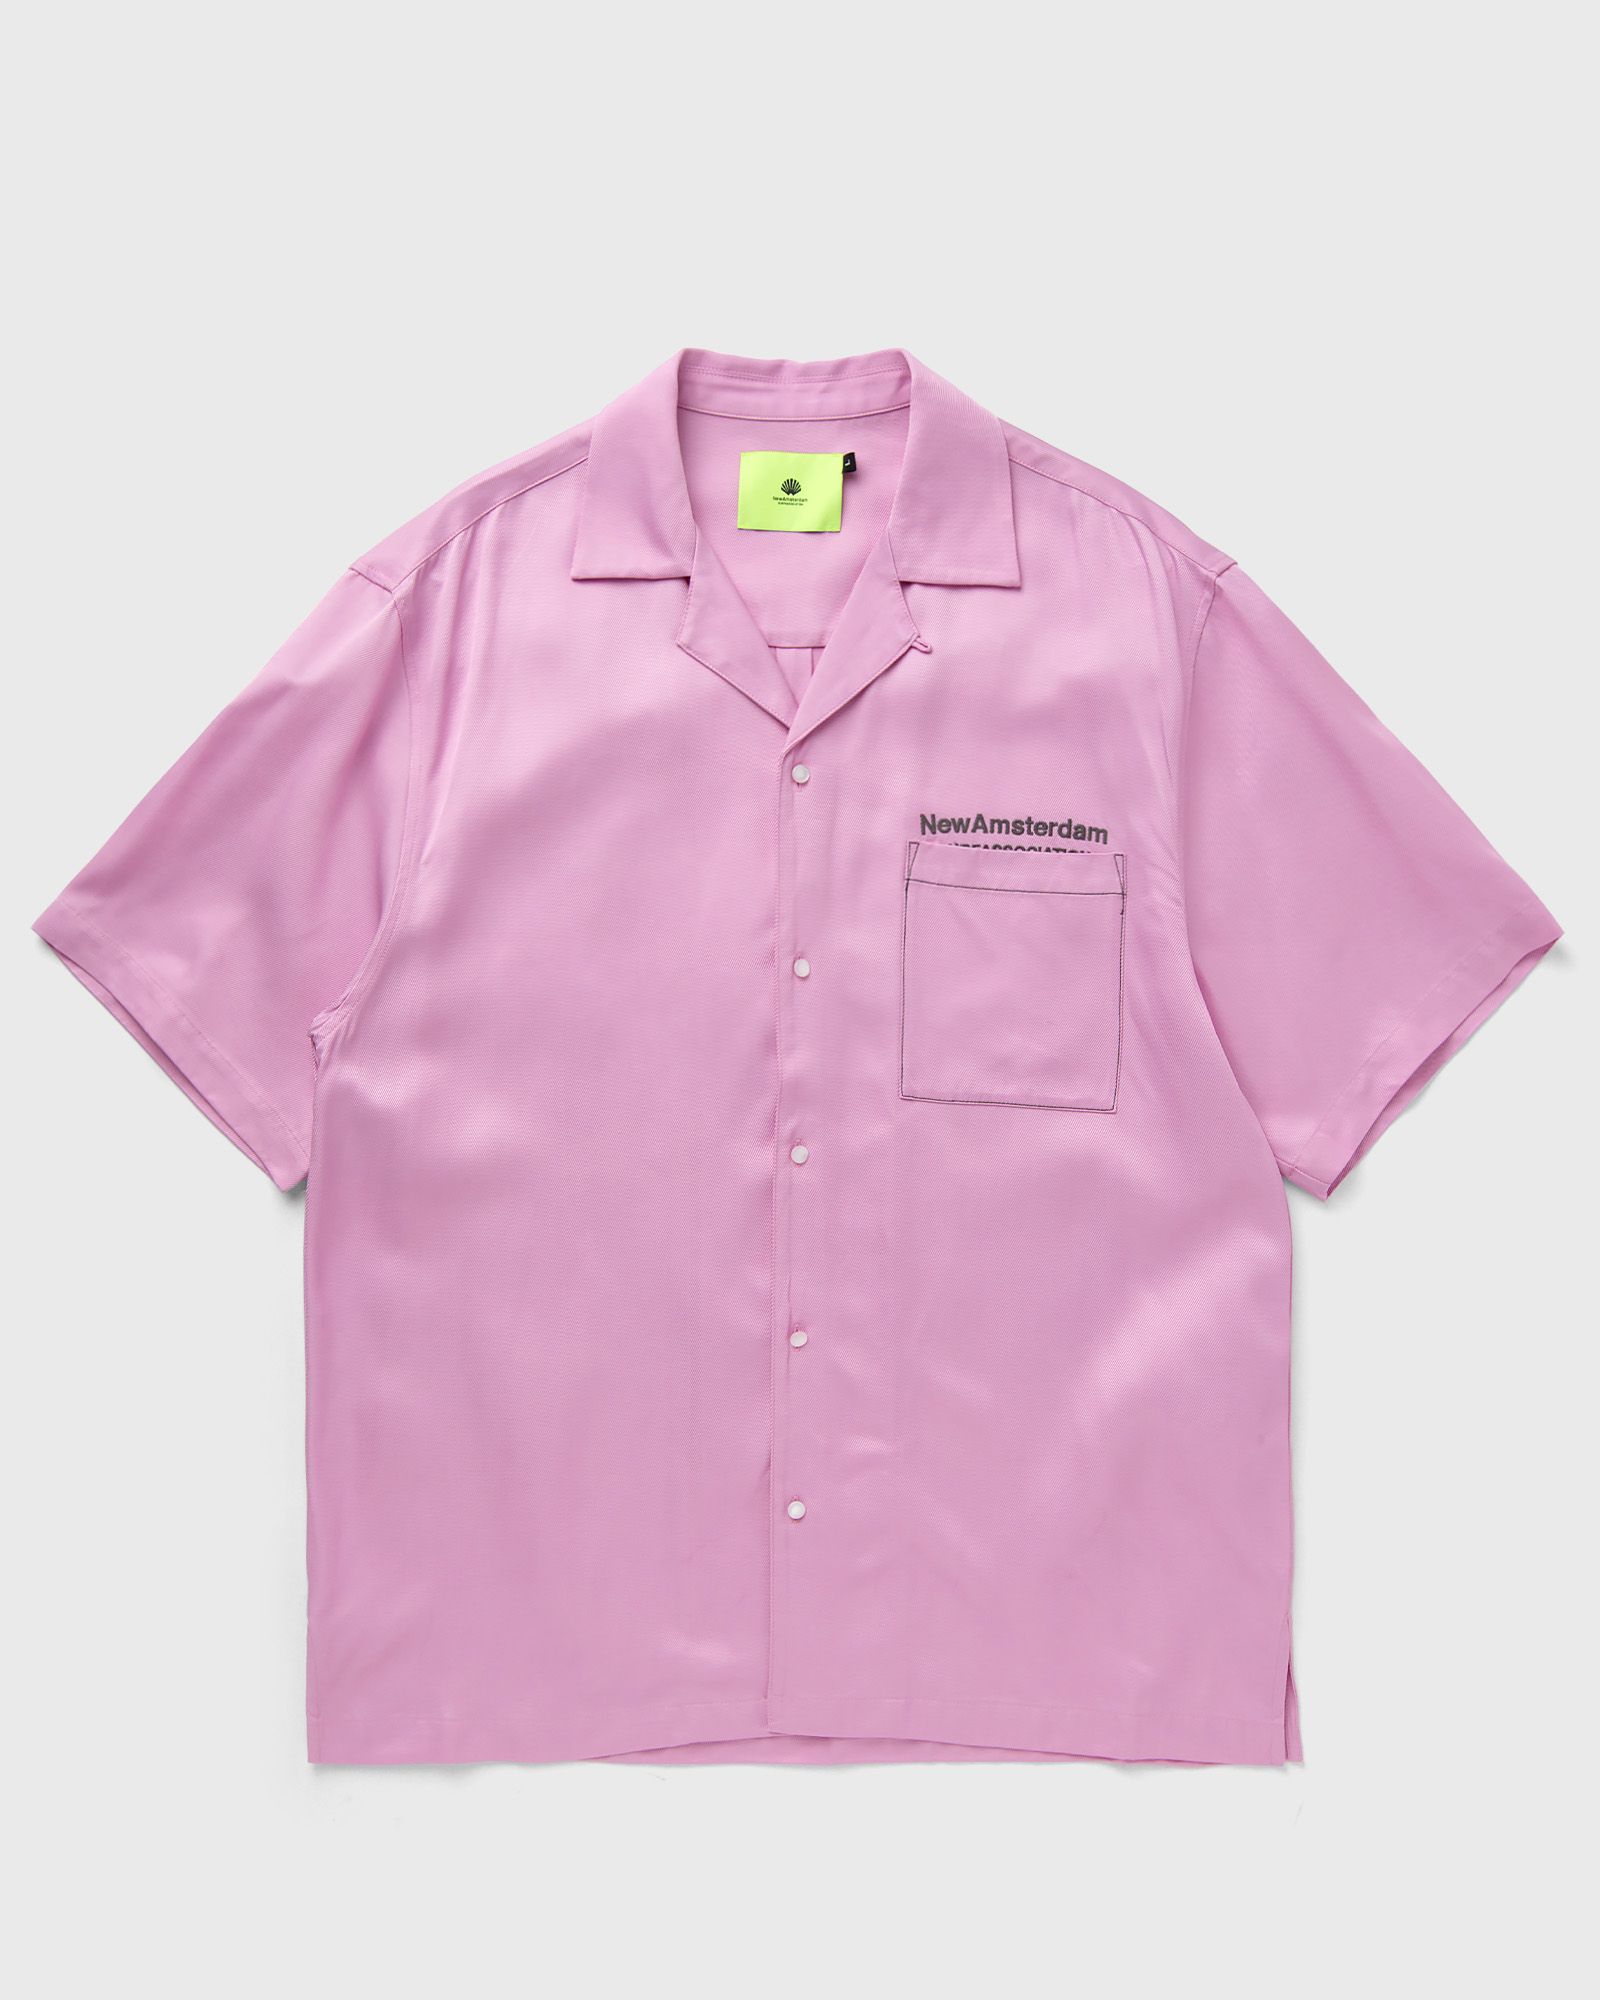 New Amsterdam - contrast stitch layday shirt men shortsleeves pink in größe:xl